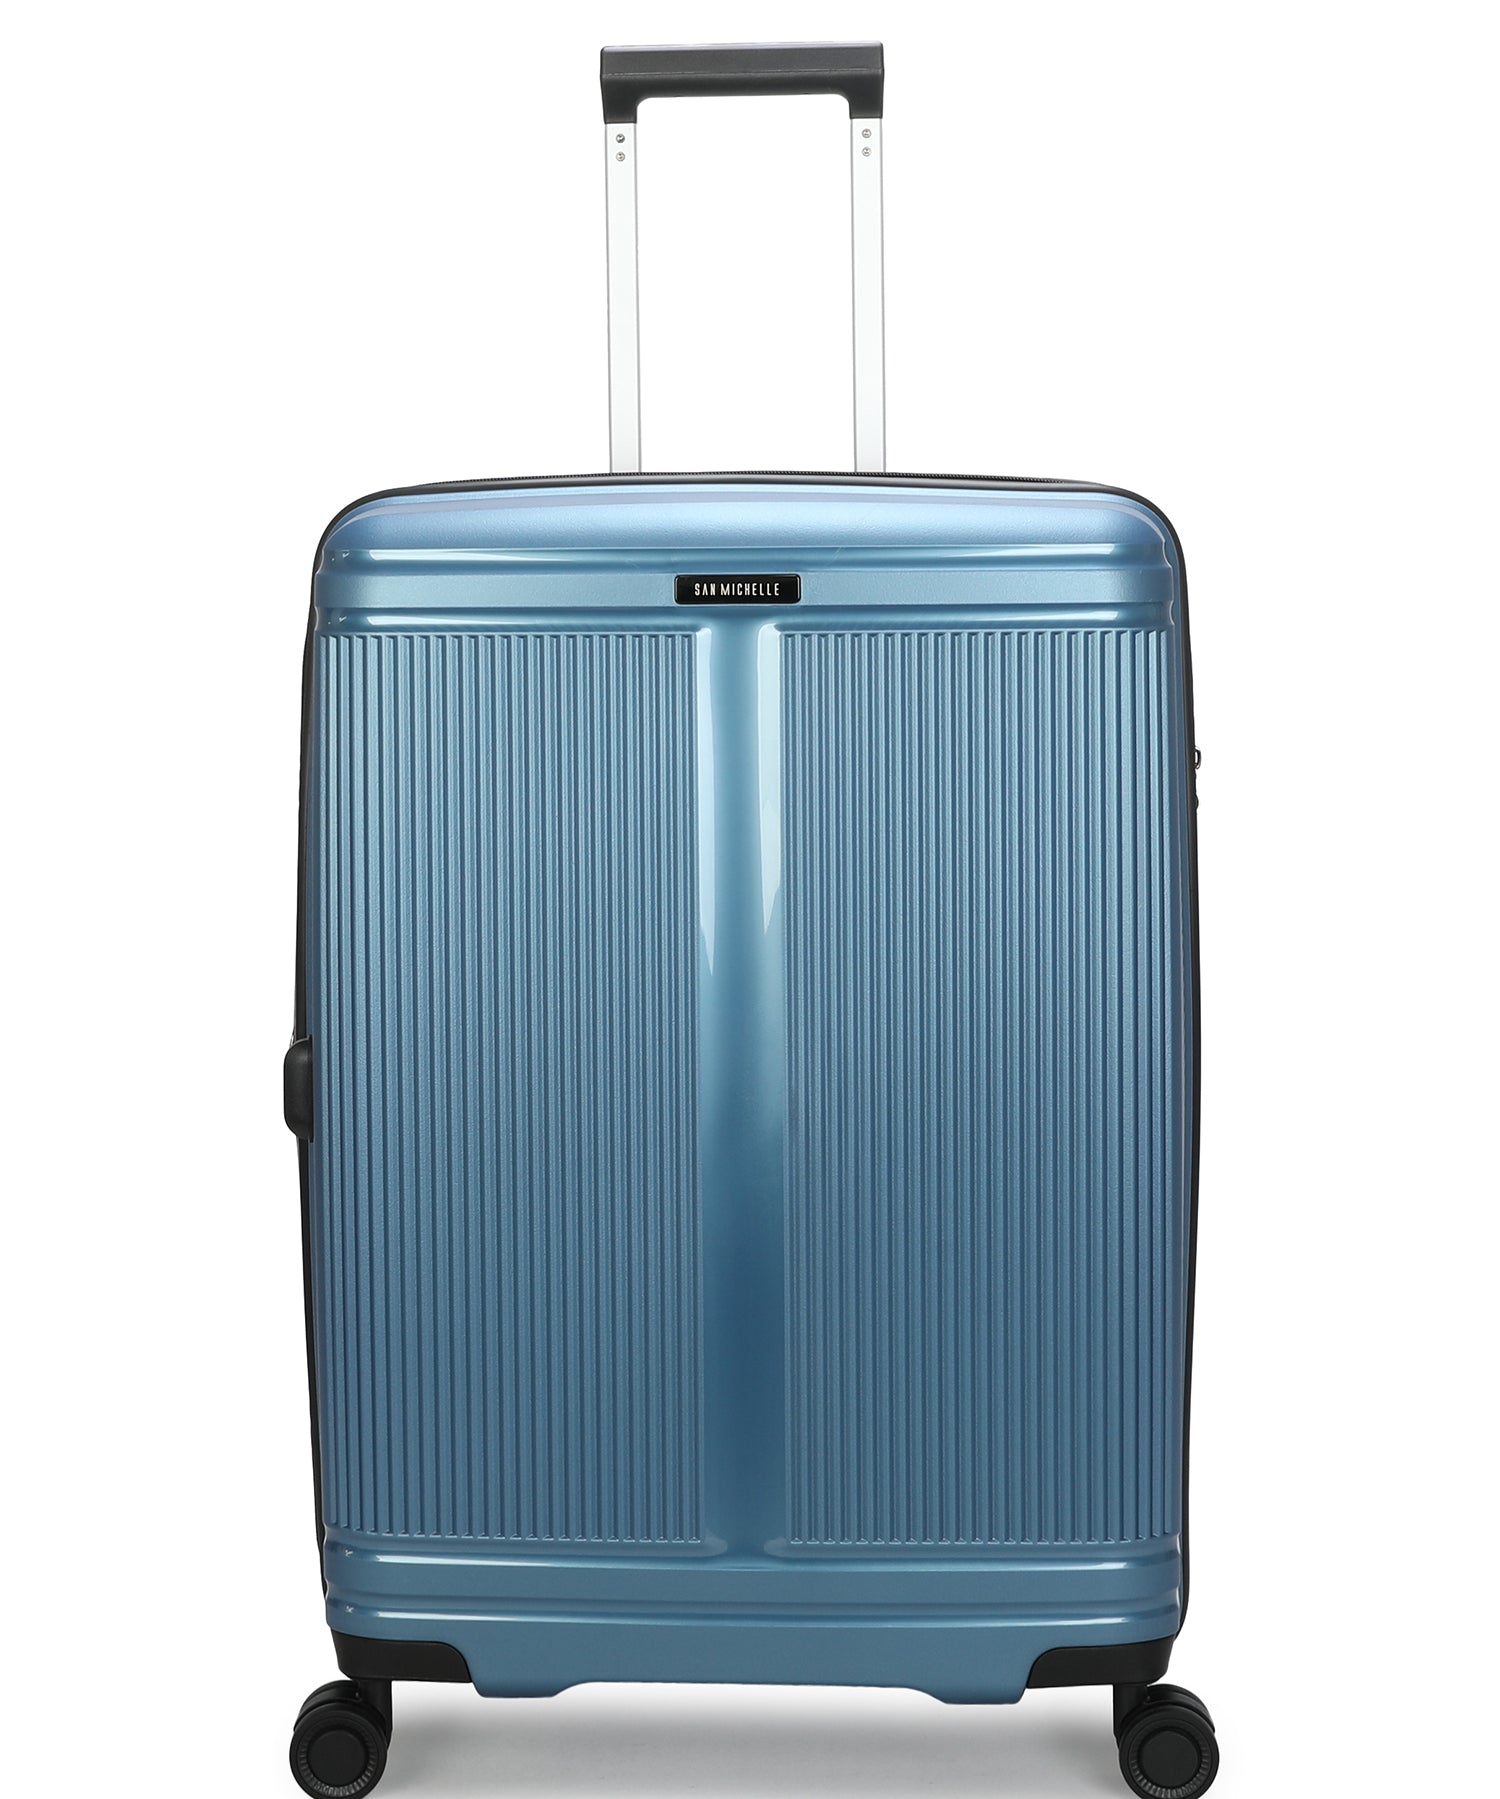 San Michelle Nova Pro 66cm Suitcase